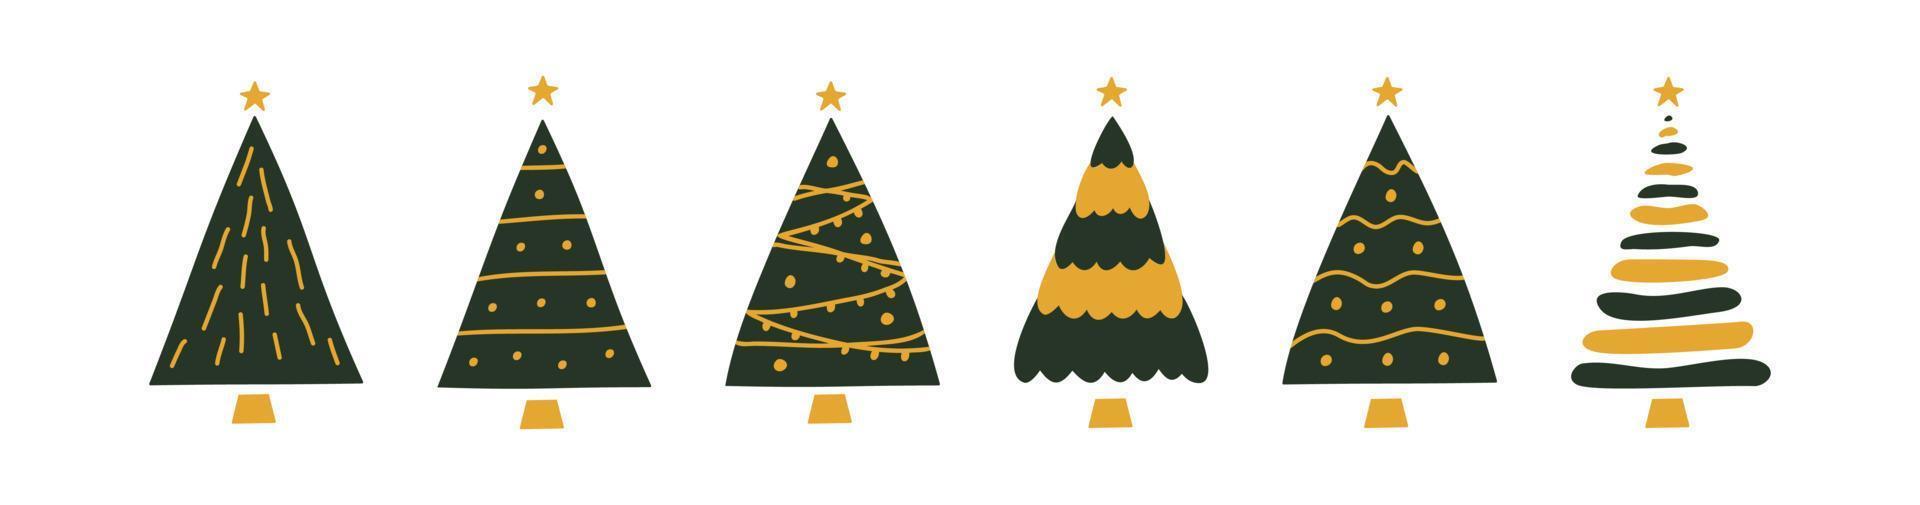 vector plano dibujado a mano conjunto de árboles de navidad